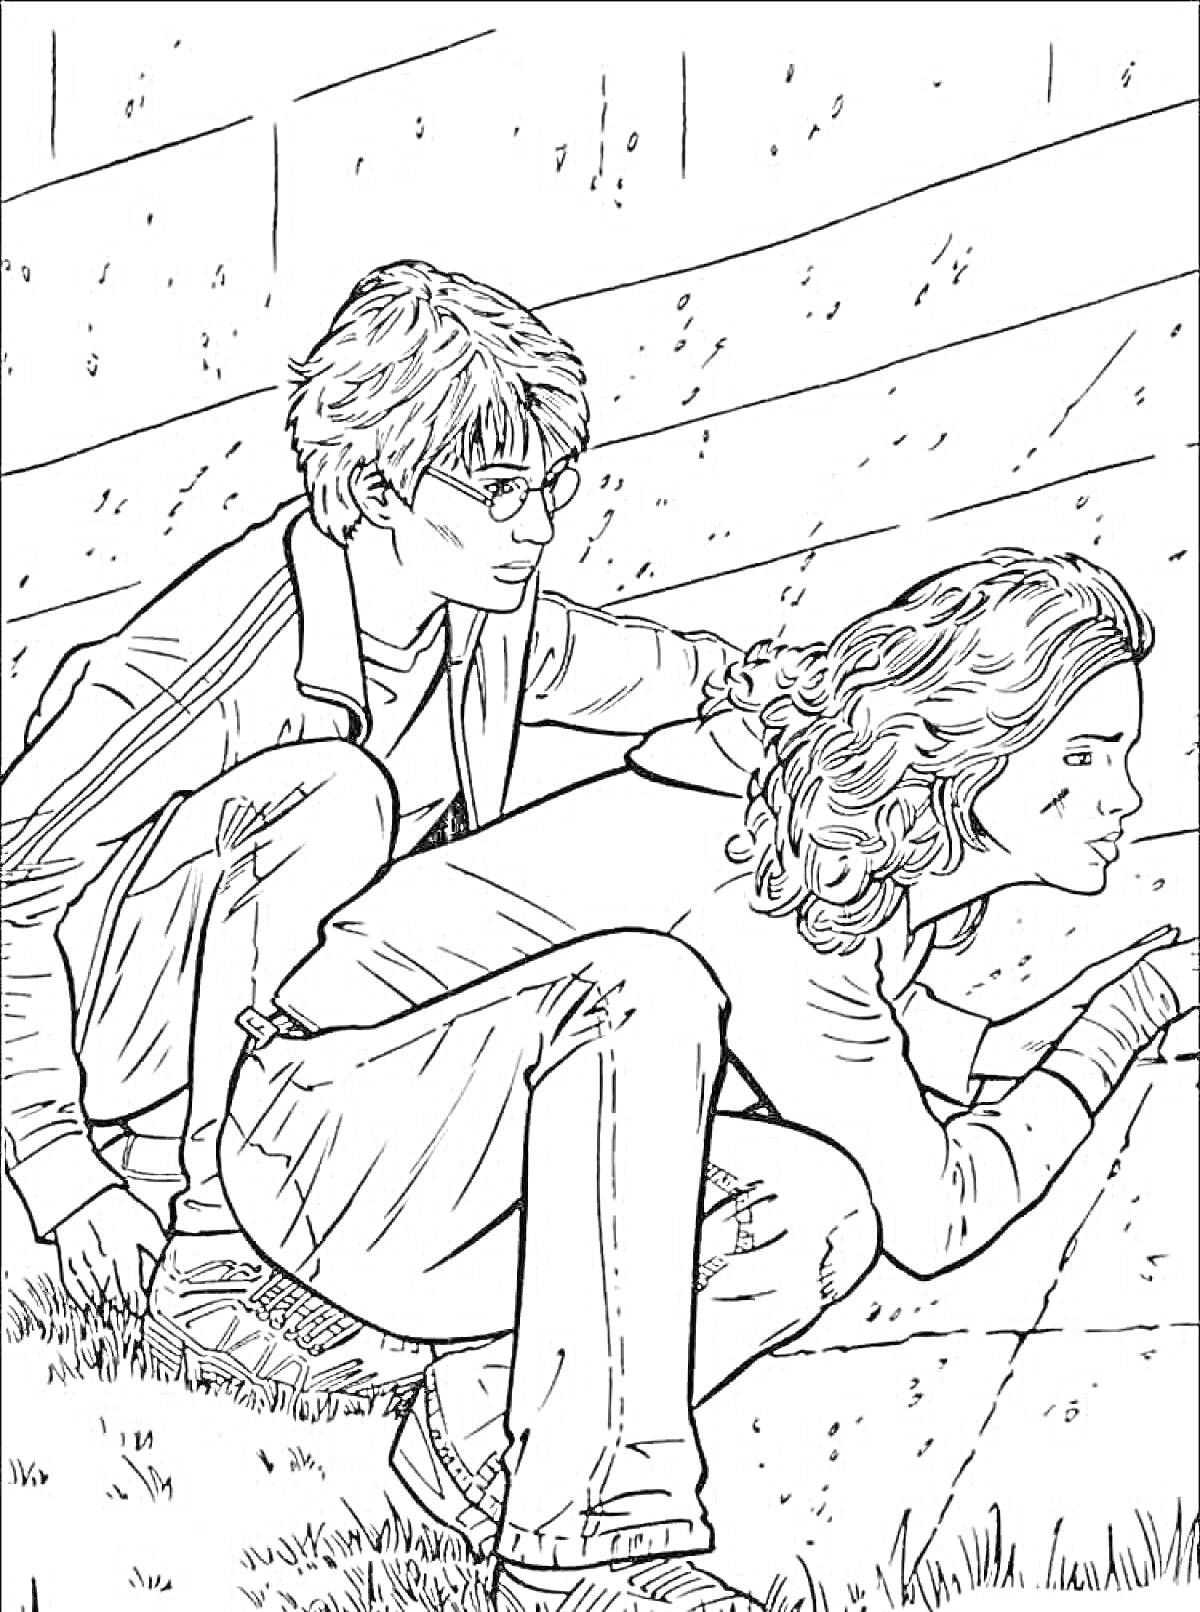 Двое подростков скрываются за стеной: поджимающий ноги мальчик в очках и девушка с волнистыми волосами.